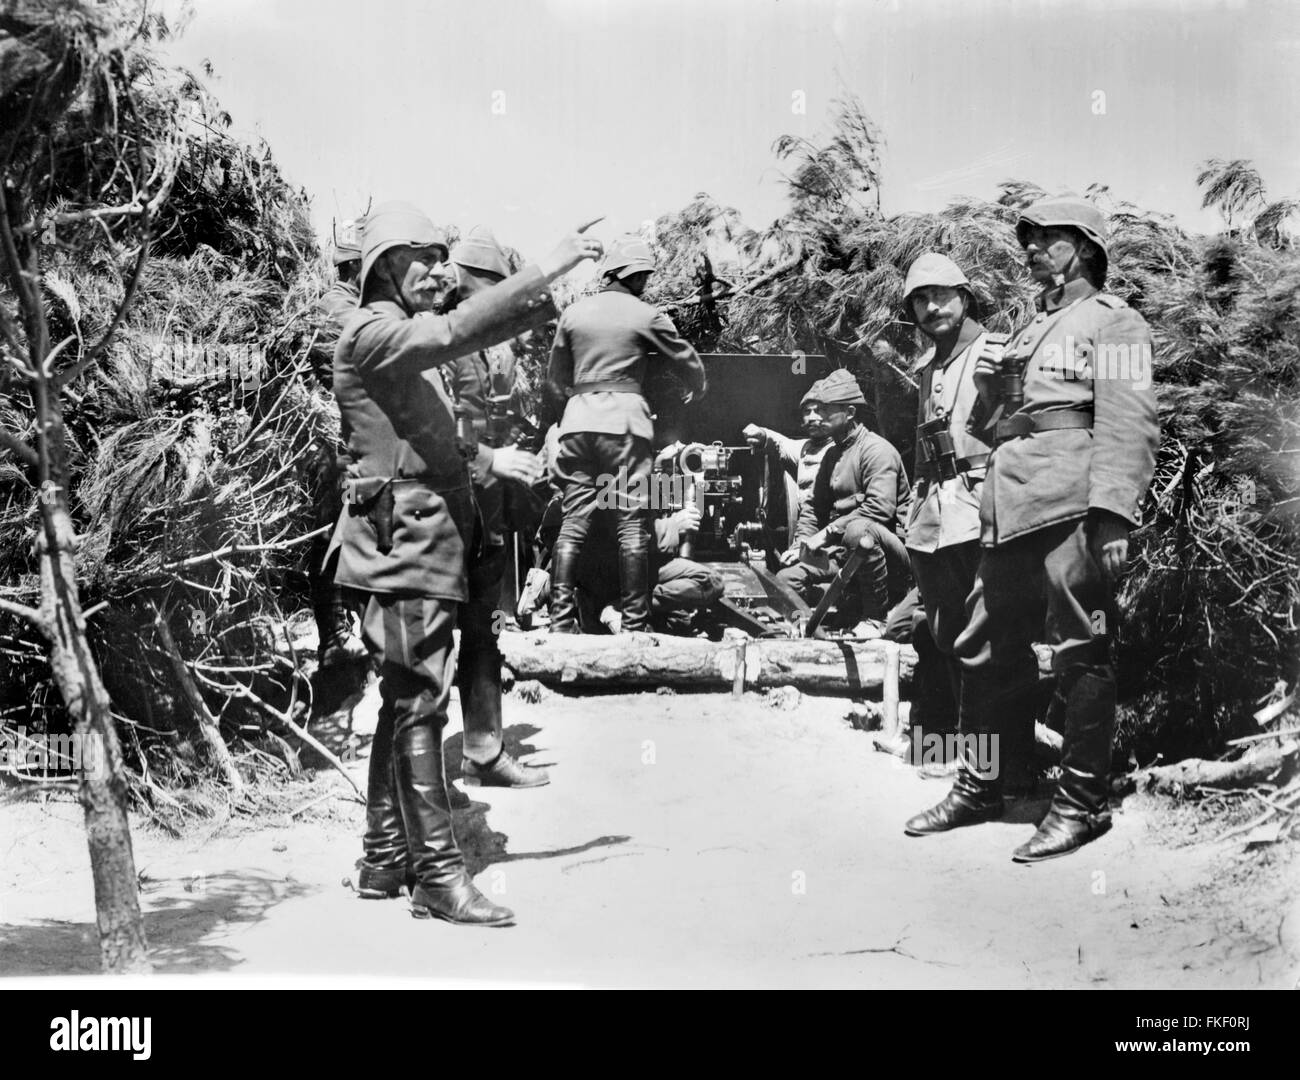 Osmanische Soldaten an einer Batterie in Gallipoli während Weltkrieg I. Foto von Bain News Service, 1915-1916 Stockfoto